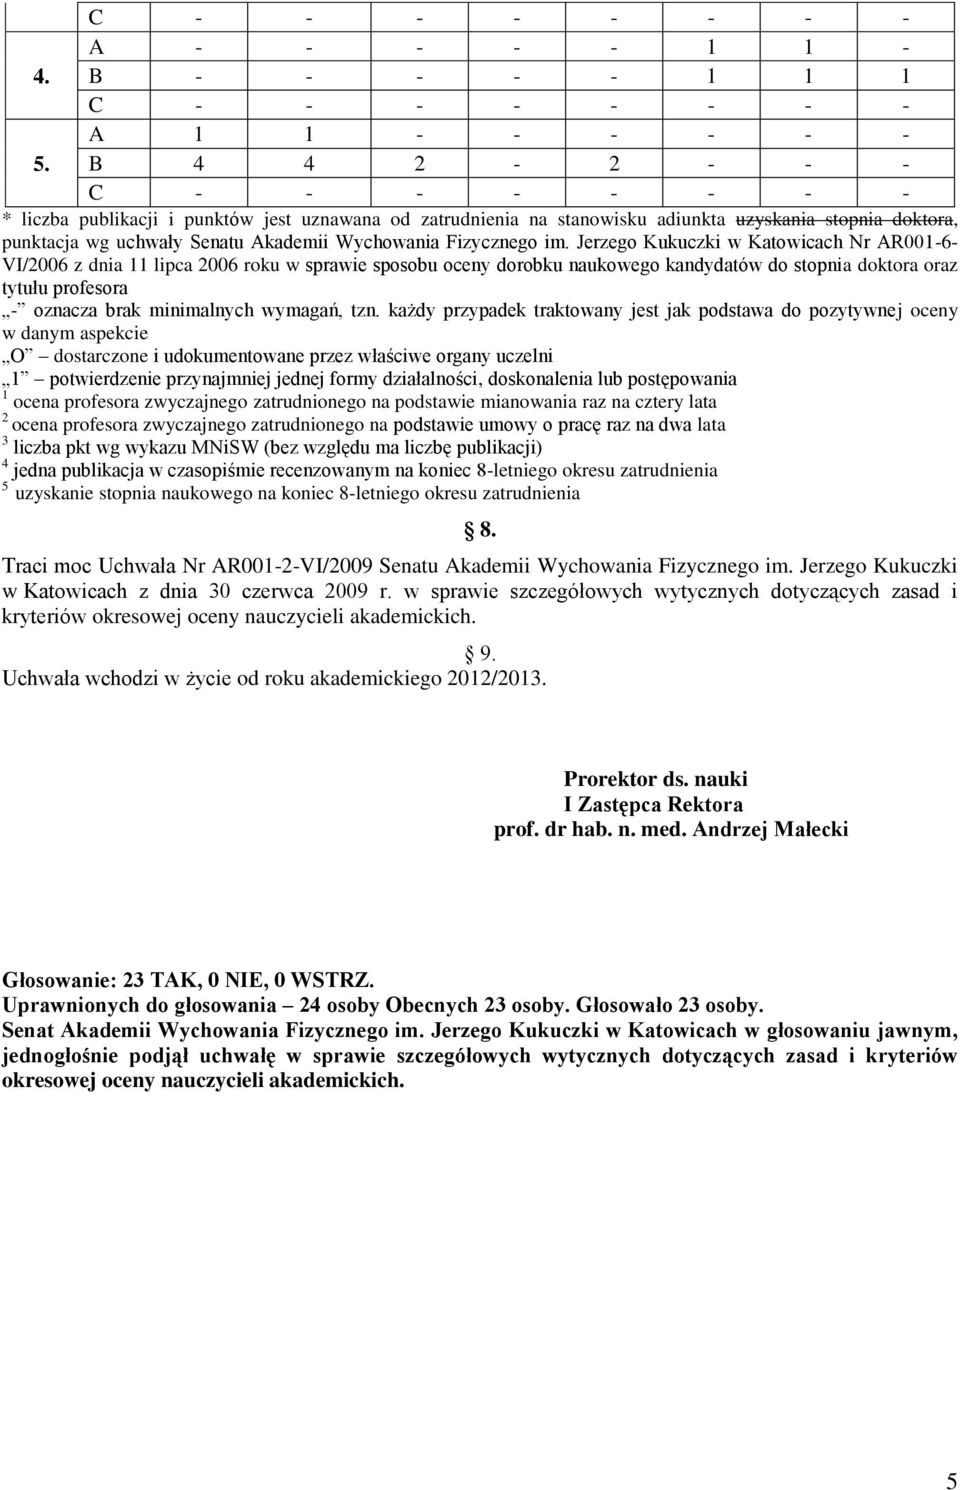 Jerzego Kukuczki w Katowicach Nr R001-6- VI/2006 z dnia 11 lipca 2006 roku w sprawie sposobu oceny dorobku naukowego kandydatów do stopnia doktora oraz tytułu profesora - oznacza brak minimalnych